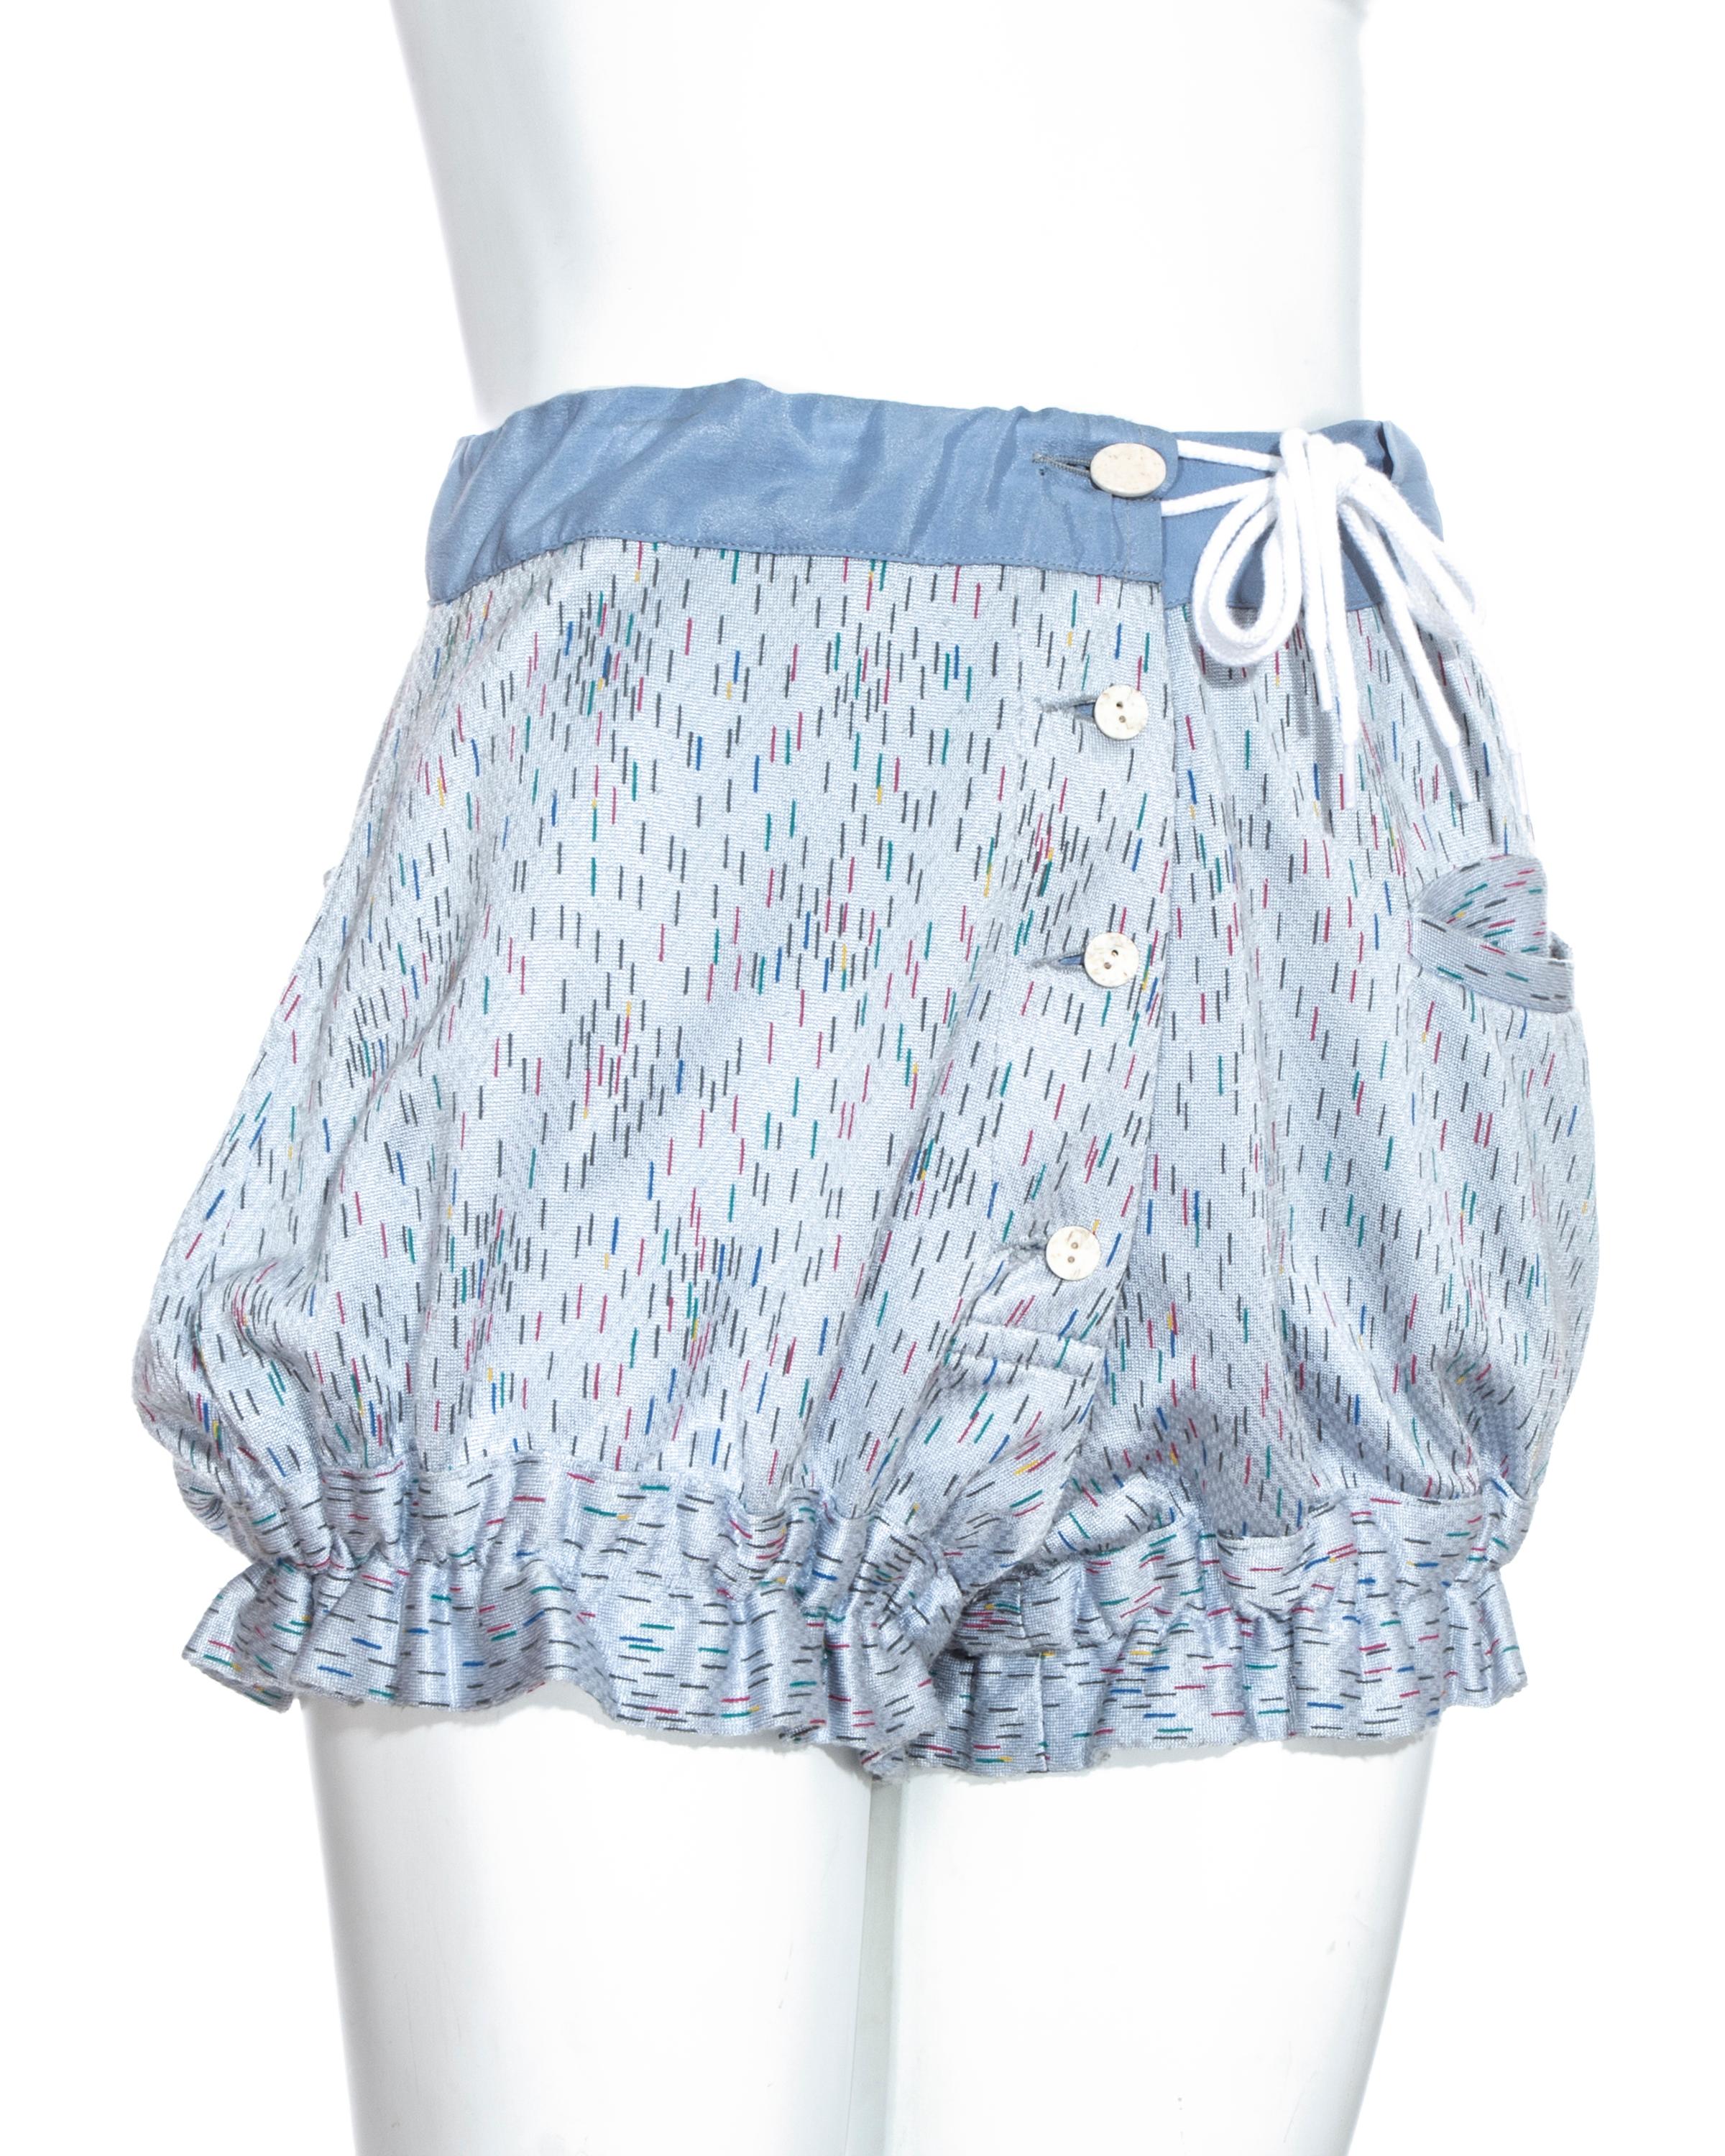 Vivienne Westwood blau bedruckte Button-Down-Shorts mit gerafftem, elastischem Bein und Kordelzug in der Taille mit kleiner Tasche auf der linken Seite

